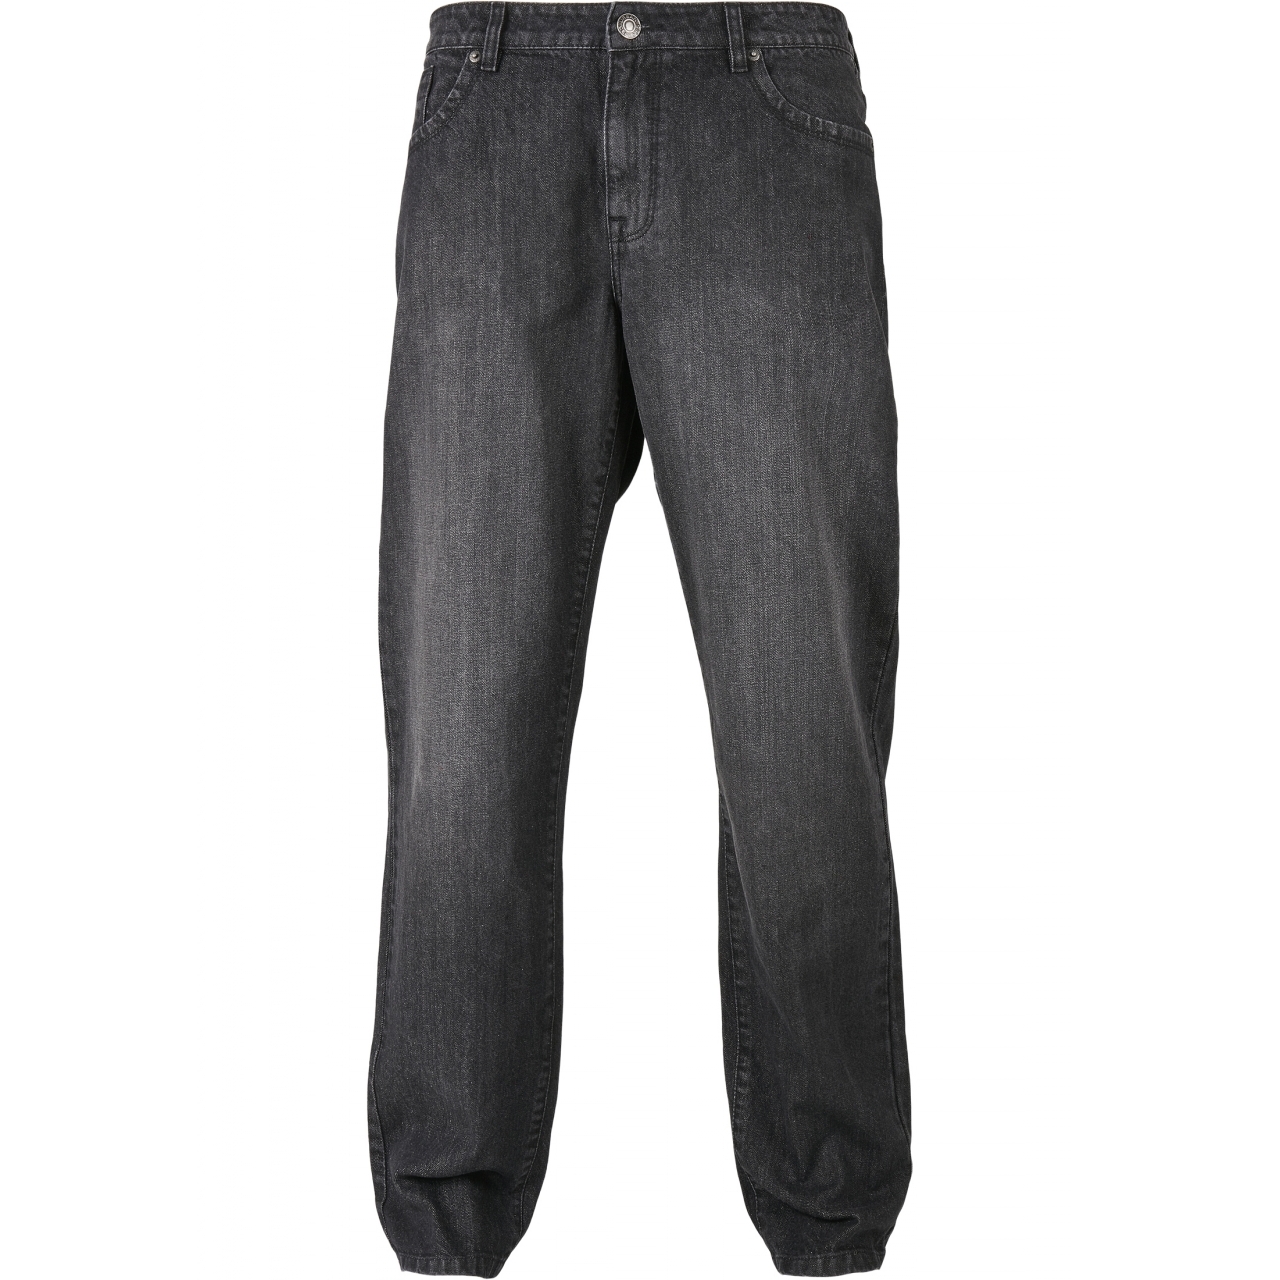 Džíny Urban Classics Loose Fit Jeans - černé, 31/34